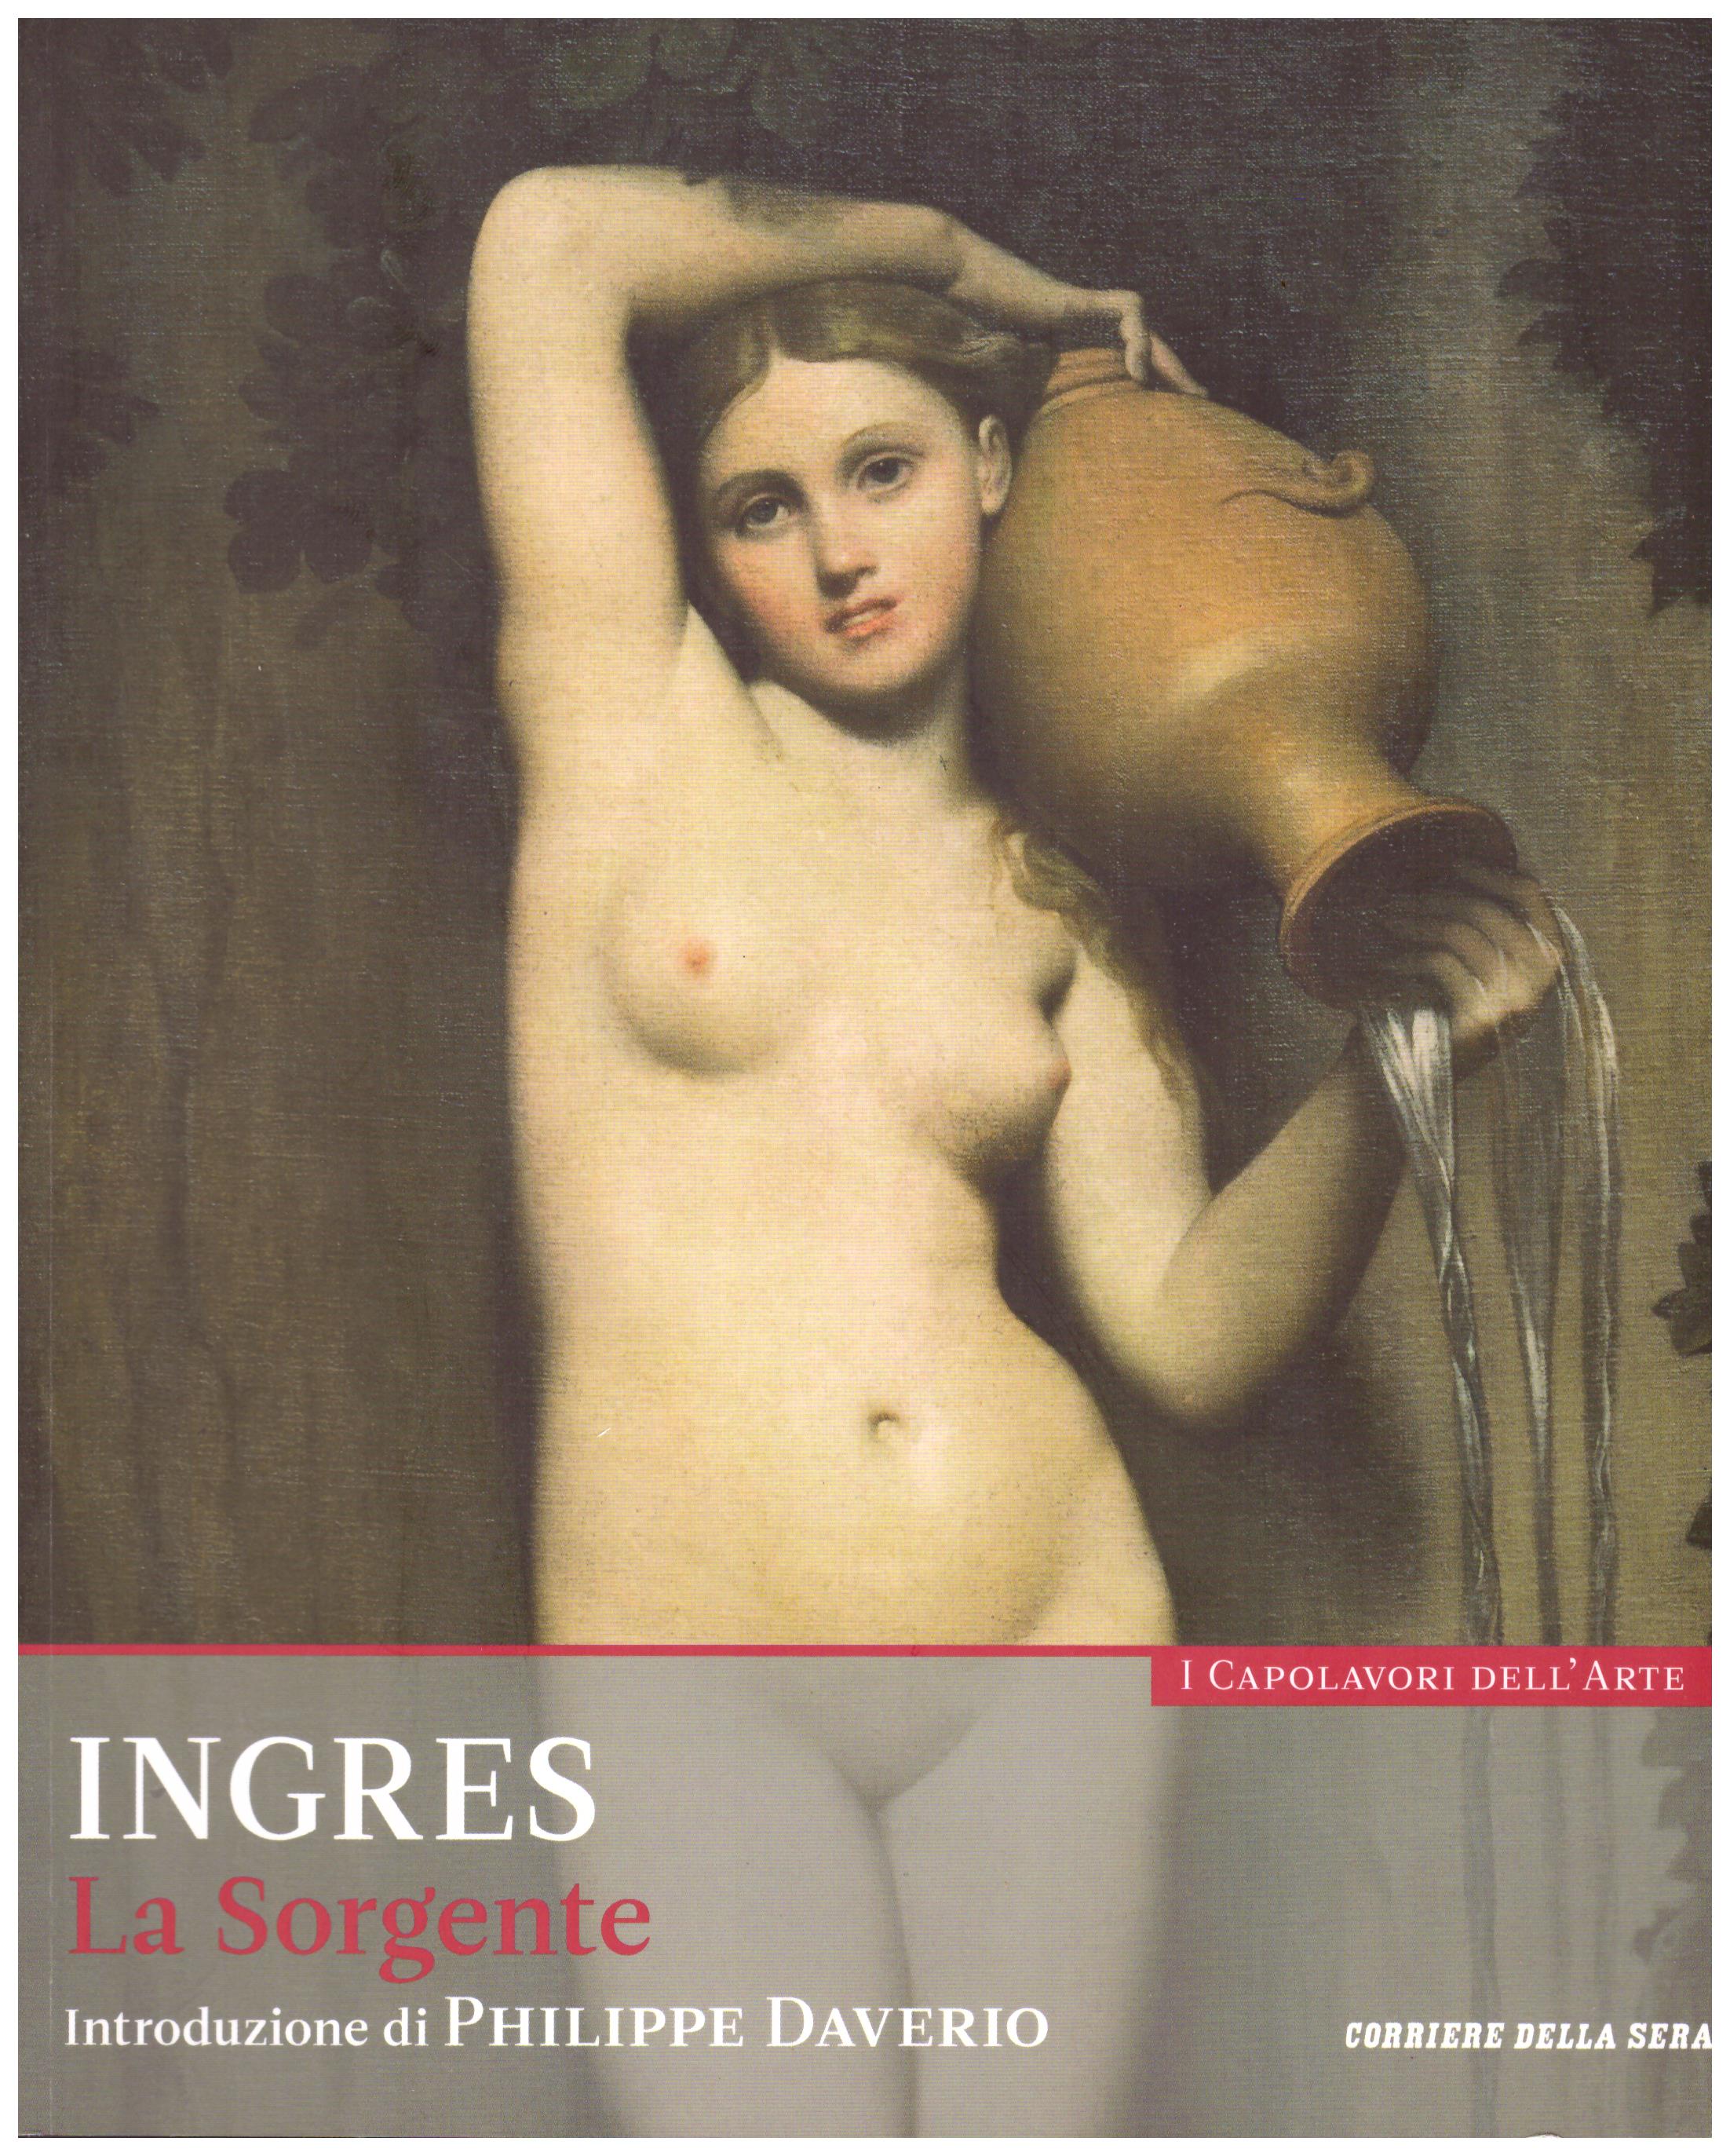 Titolo: I capolavori dell'arte, Ingres n.30  Autore : AA.VV.   Editore: education,it/corriere della sera, 2015